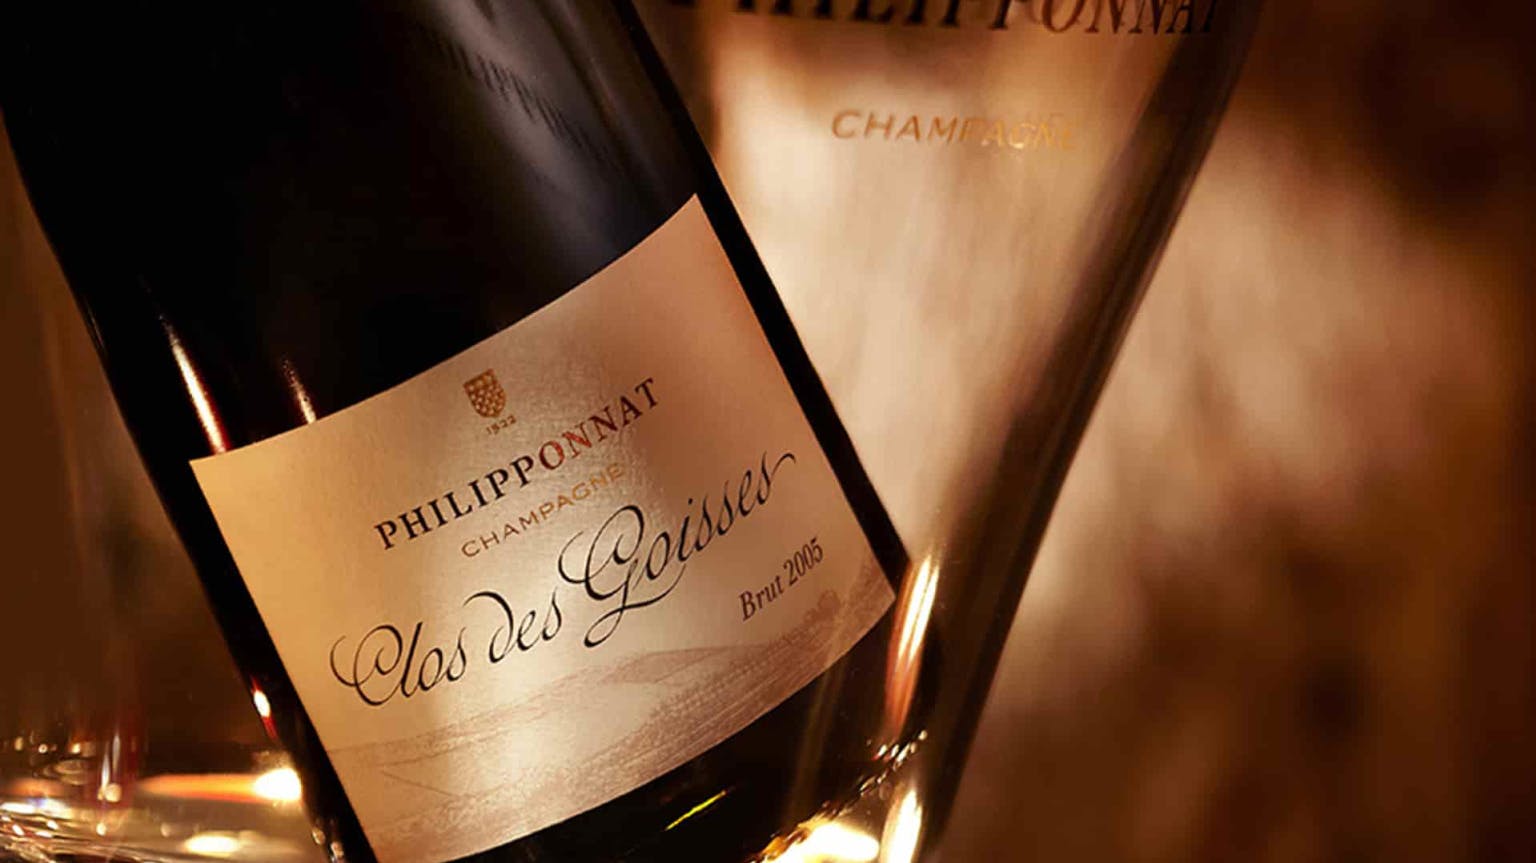 Behind the bottle: Champagne Philipponnat's Clos des Goisses